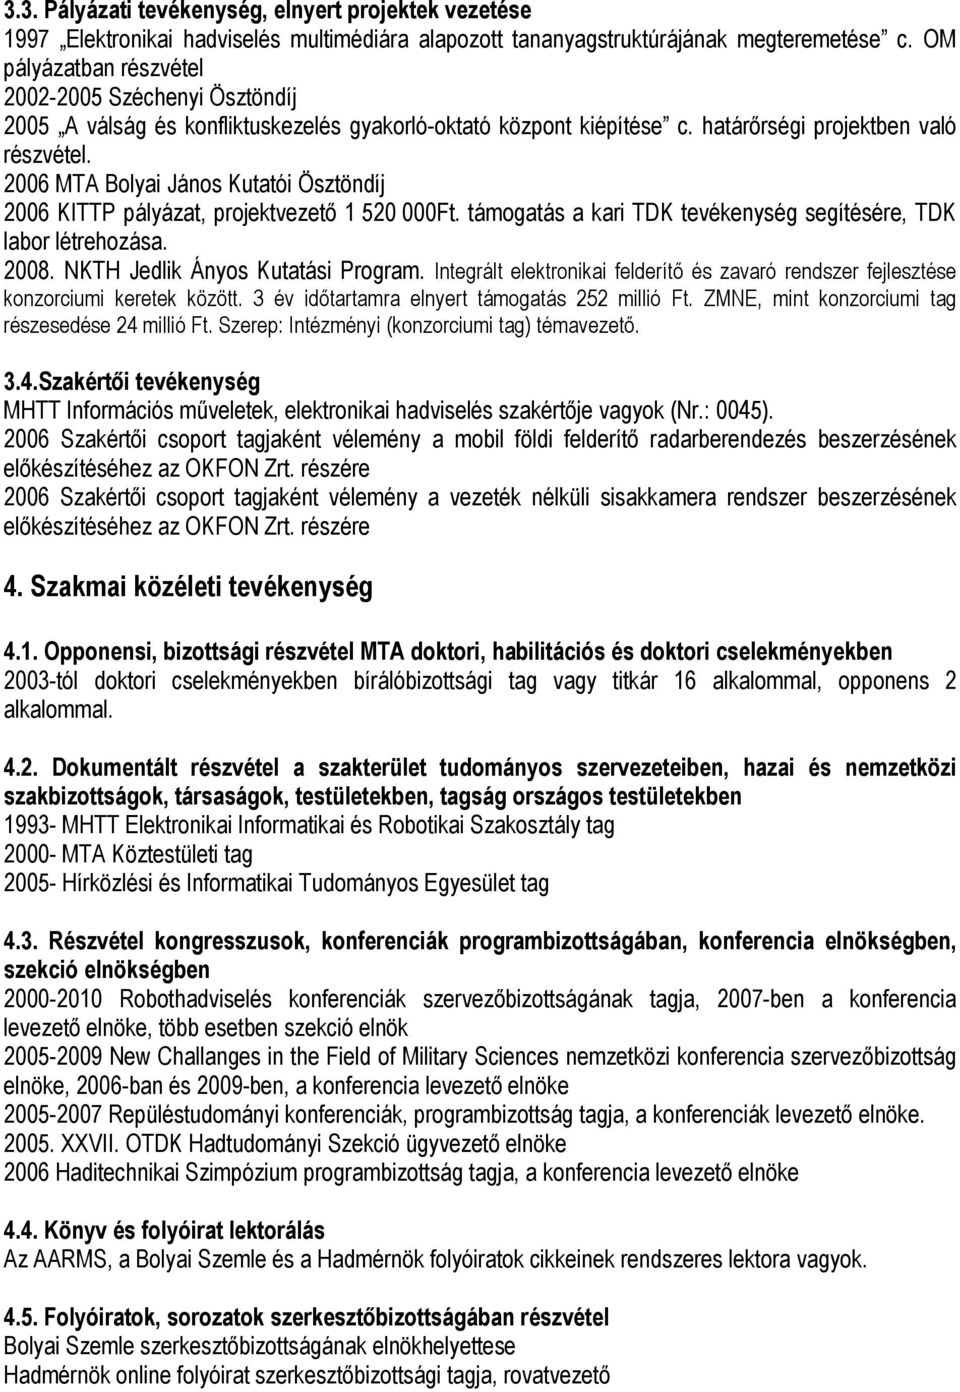 2006 MTA Bolyai János Kutatói Ösztöndíj 2006 KITTP pályázat, projektvezetı 1 520 000Ft. támogatás a kari TDK tevékenység segítésére, TDK labor létrehozása. 2008. NKTH Jedlik Ányos Kutatási Program.